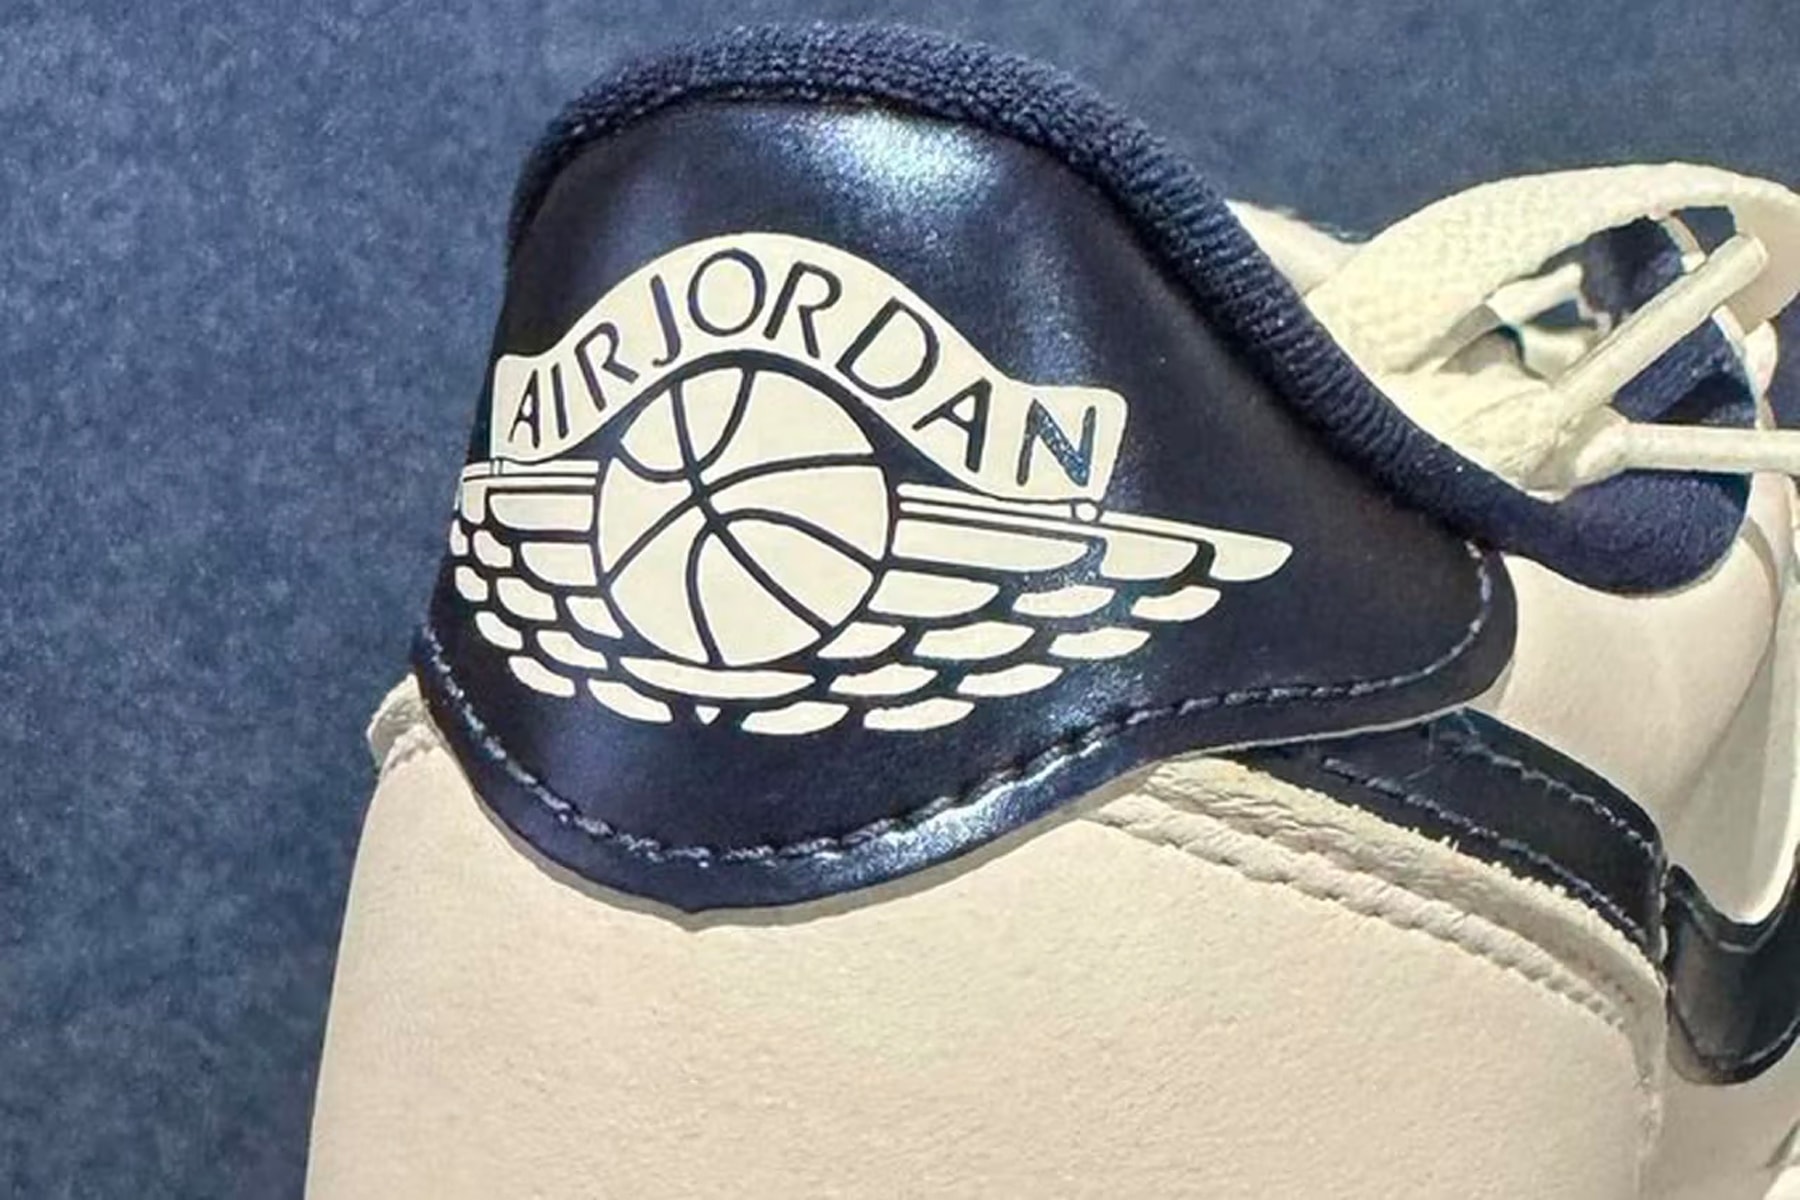 藤原ヒロシが復刻予定のエアジョーダン 1 '85をお披露目 Take a First Look at the Air Jordan 1 Low '85 "Metallic Navy" sneaker news 